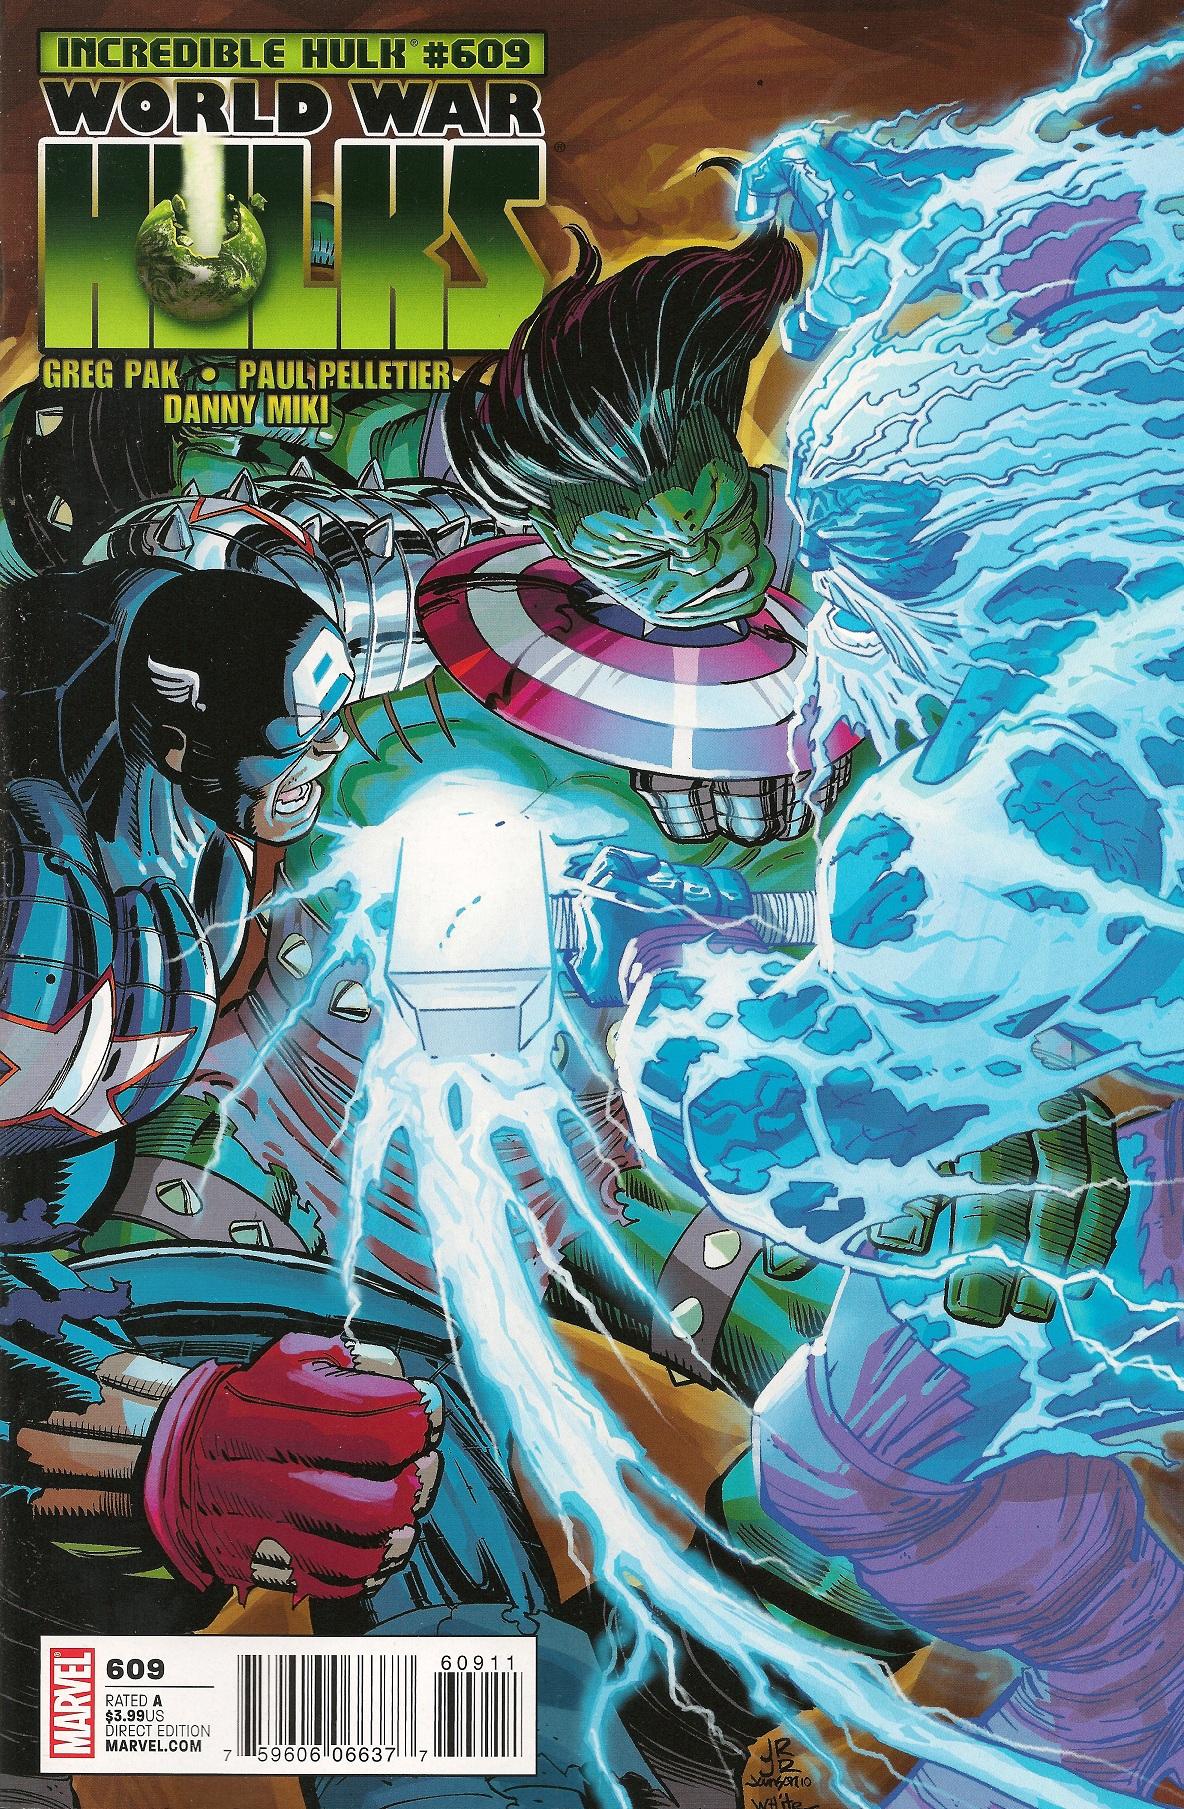 The Incredible Hulk Vol. 1 #609